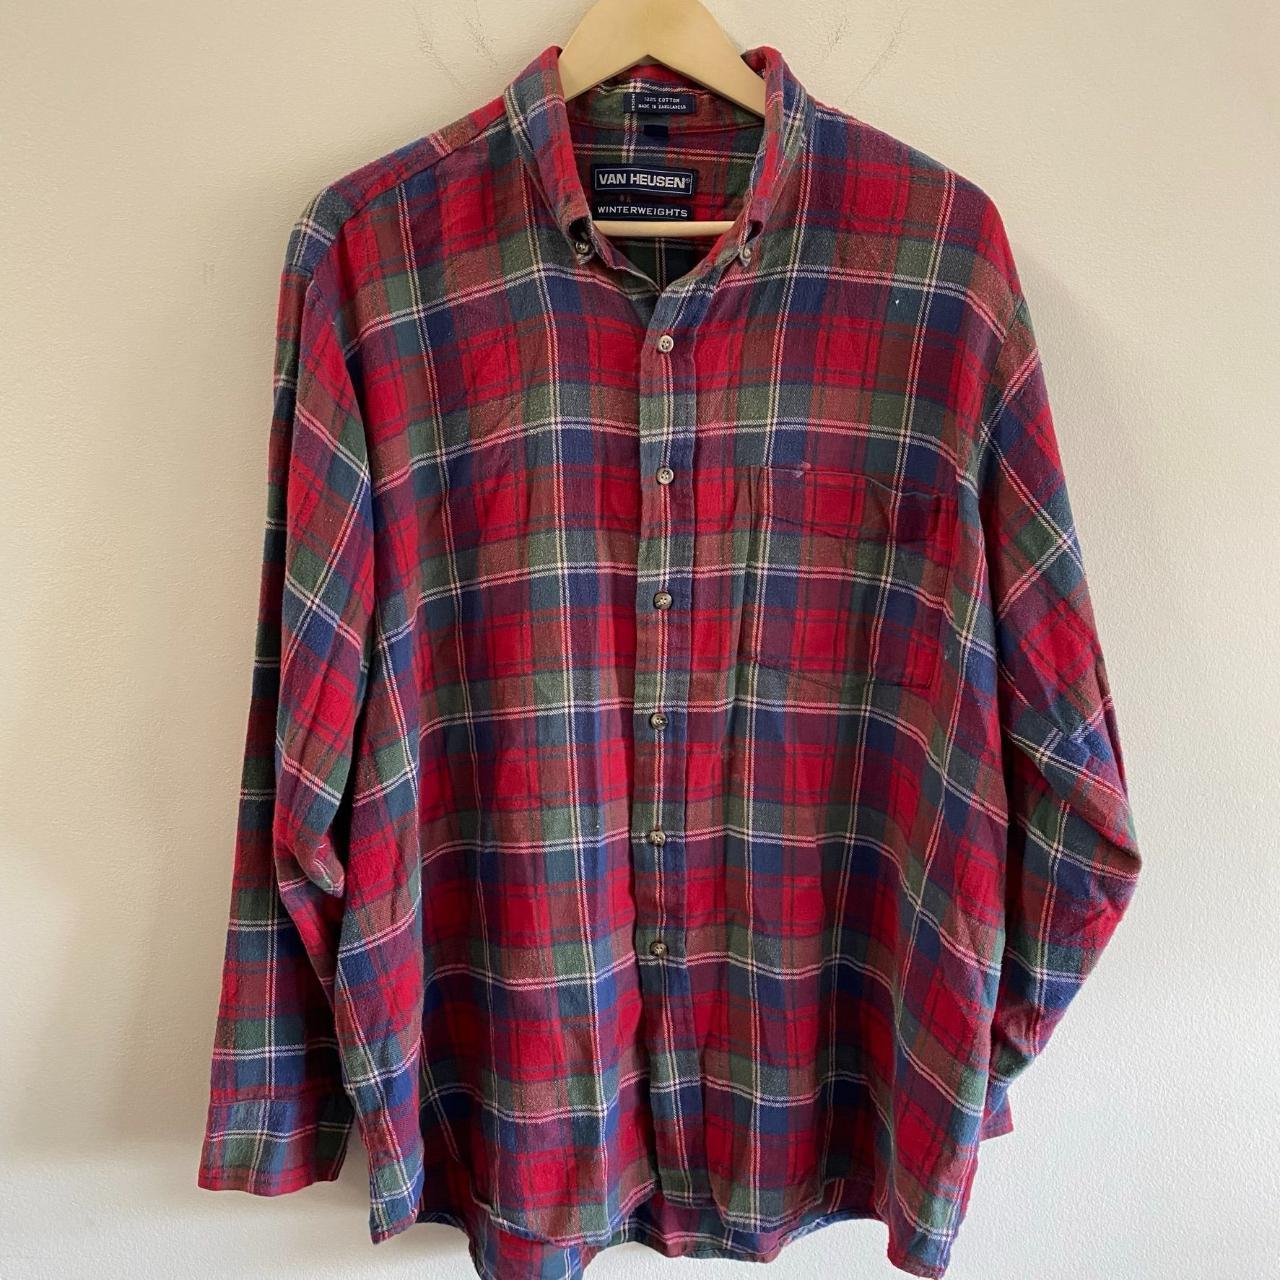 Vintage Van Heusen Flannel Shirt Size: XL Vintage... - Depop